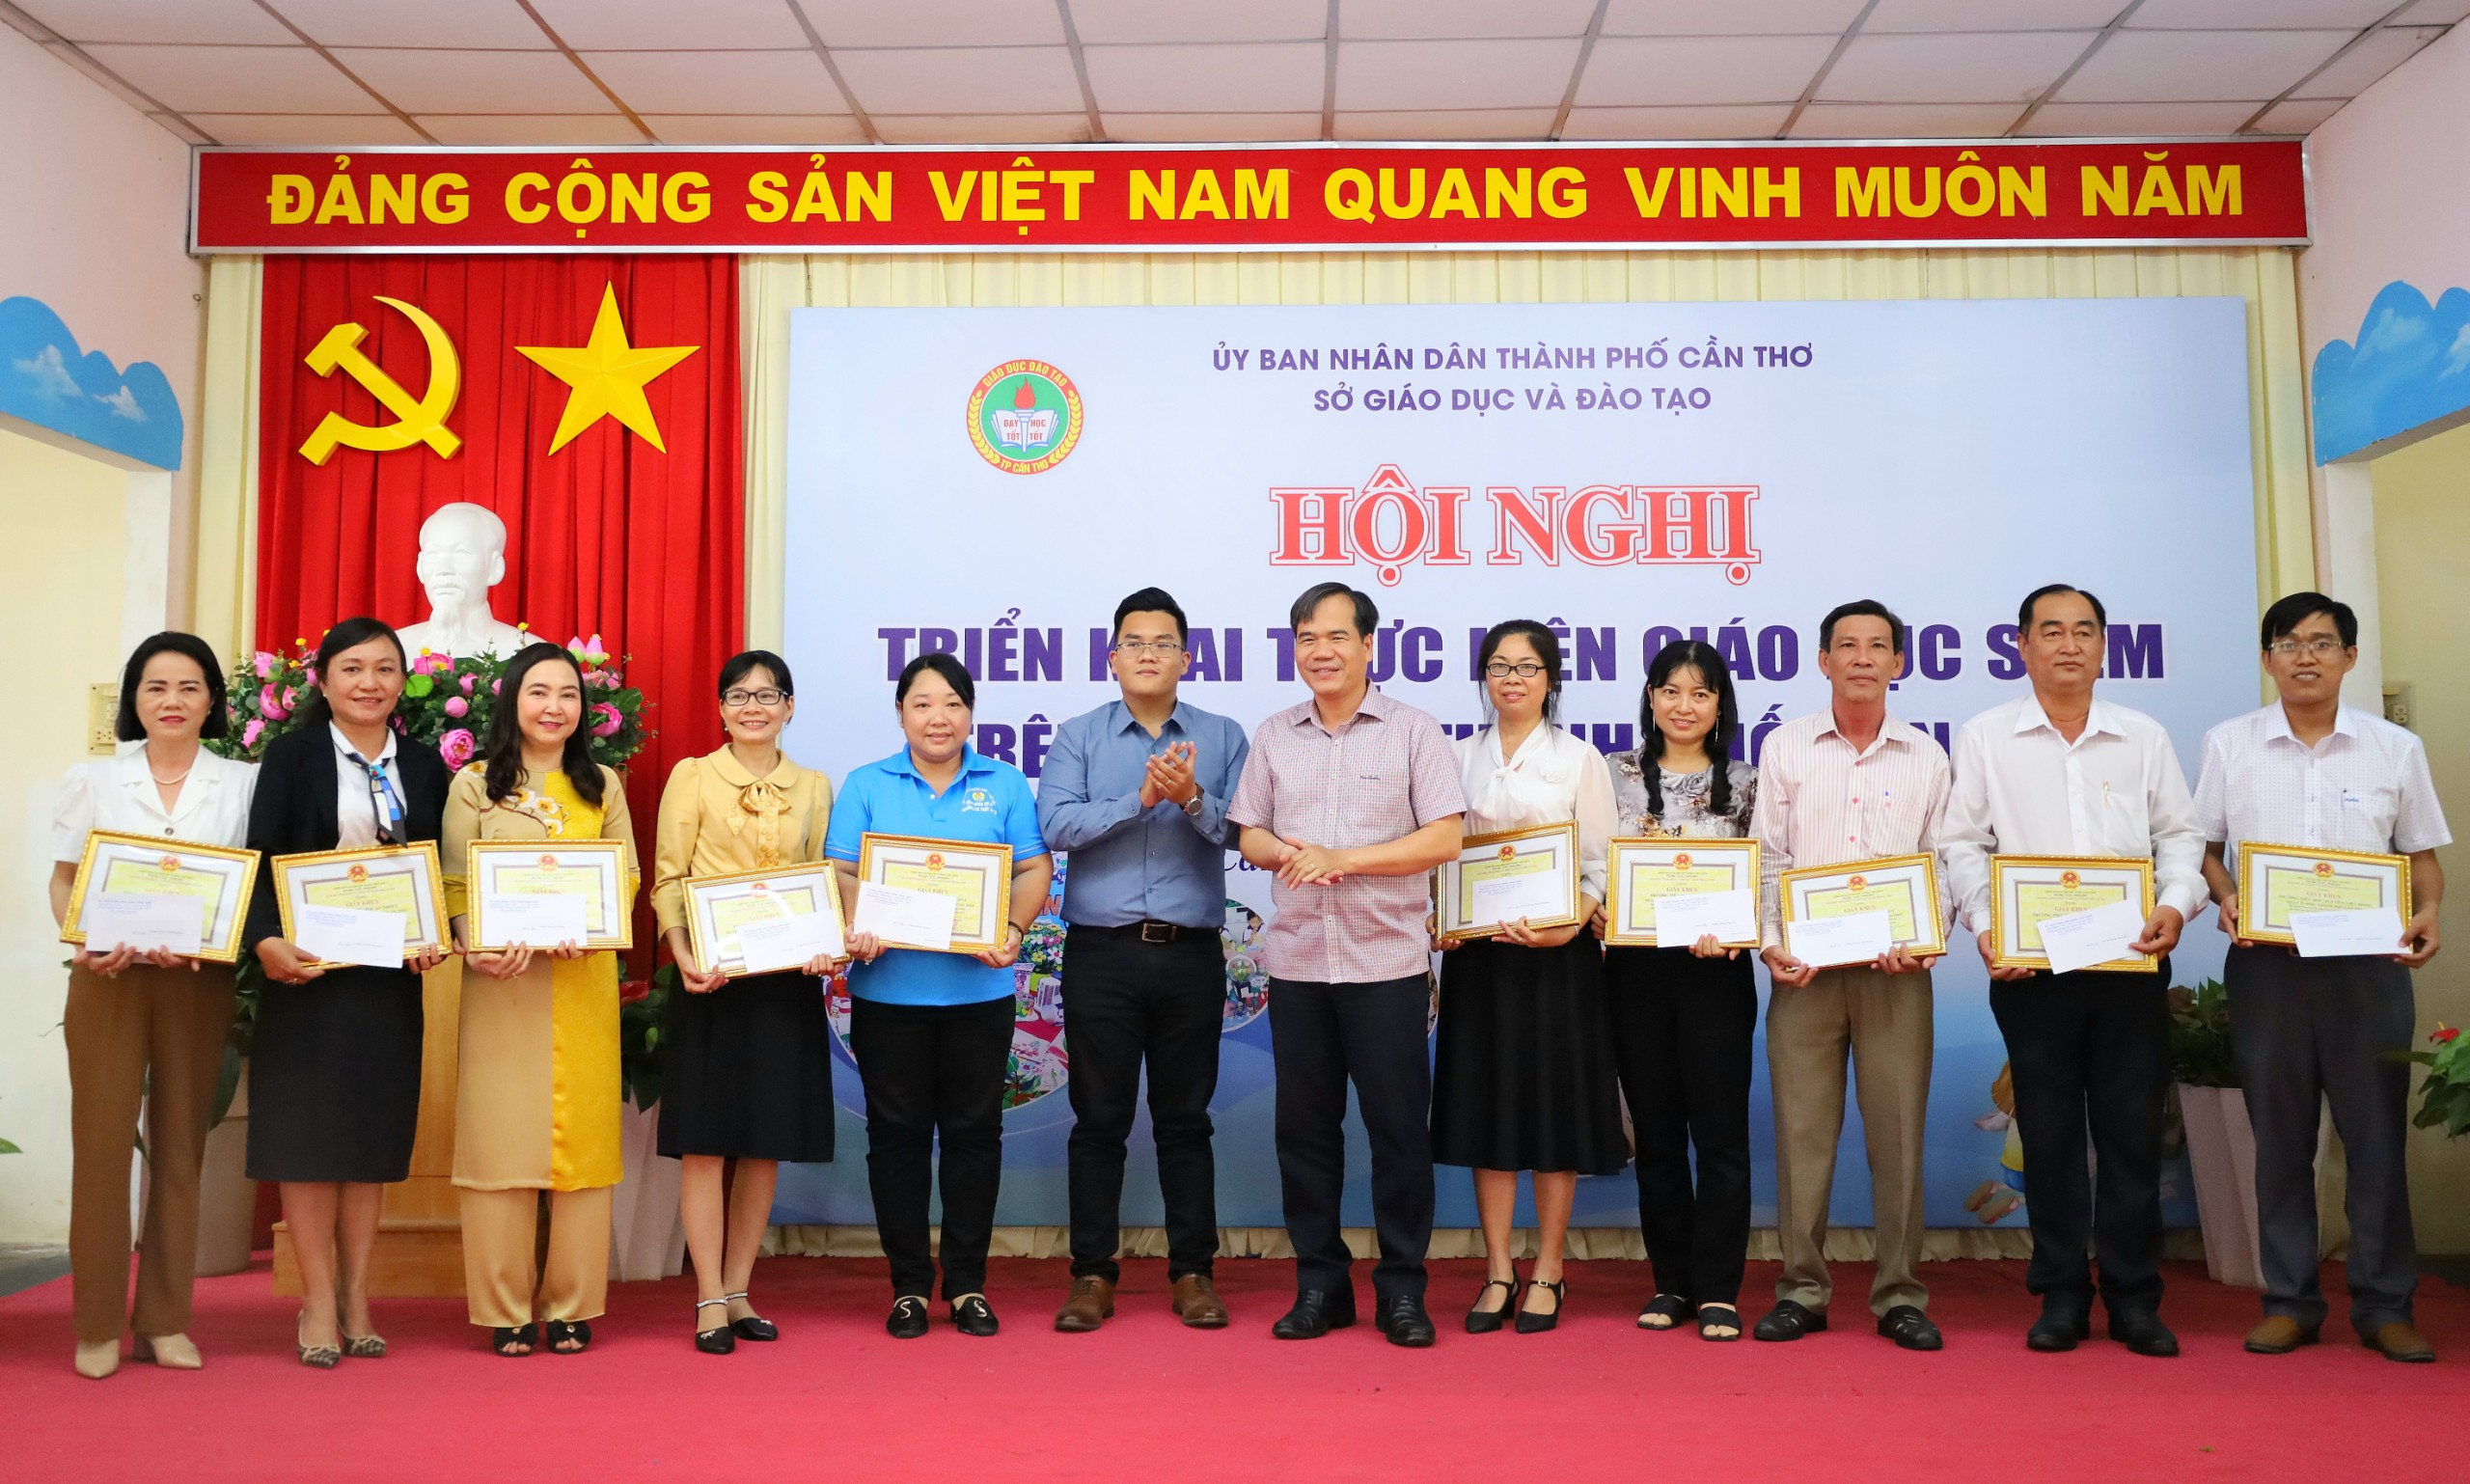 Ông Nguyễn Phúc Tăng - Phó Giám đốc Sở Giáo dục và Đào tạo TP. Cần Thơ trao tặng giấy khen cho các đơn vị tham gia ngày hội.